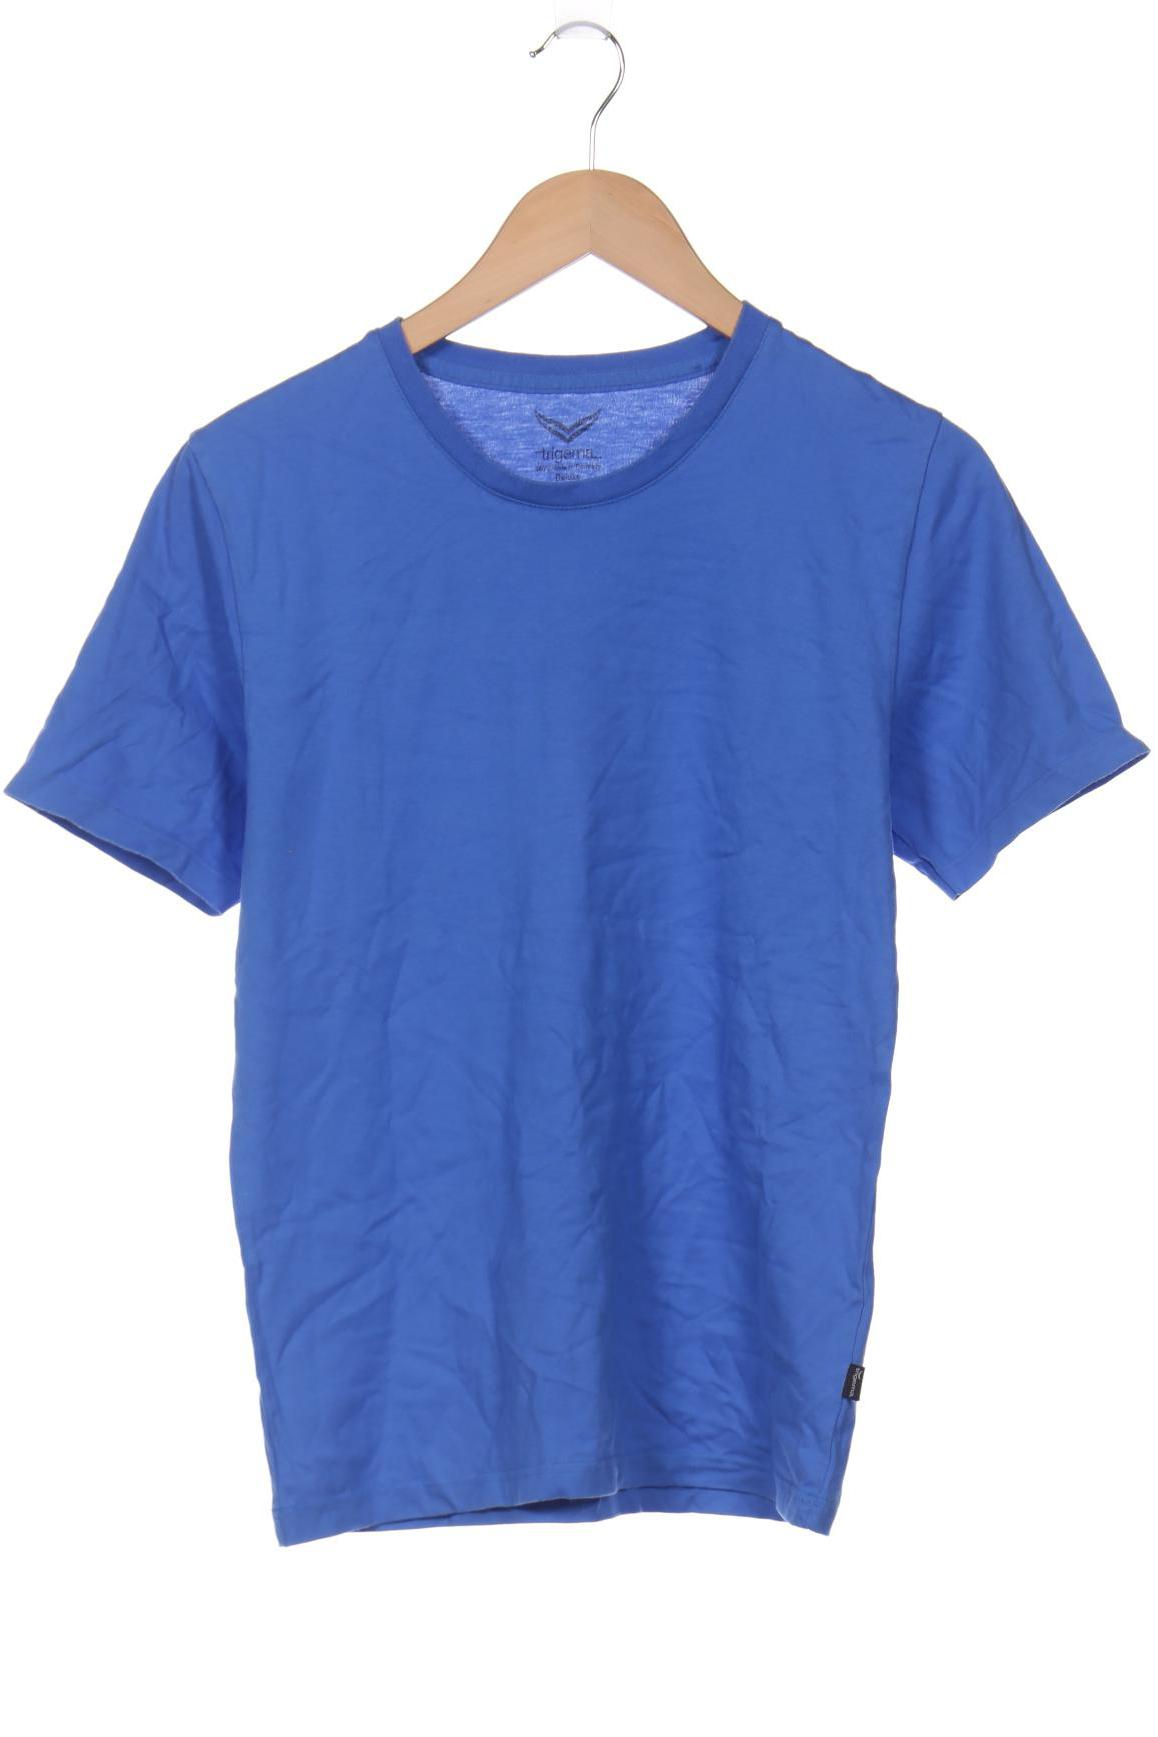 Trigema Herren T-Shirt, blau von Trigema